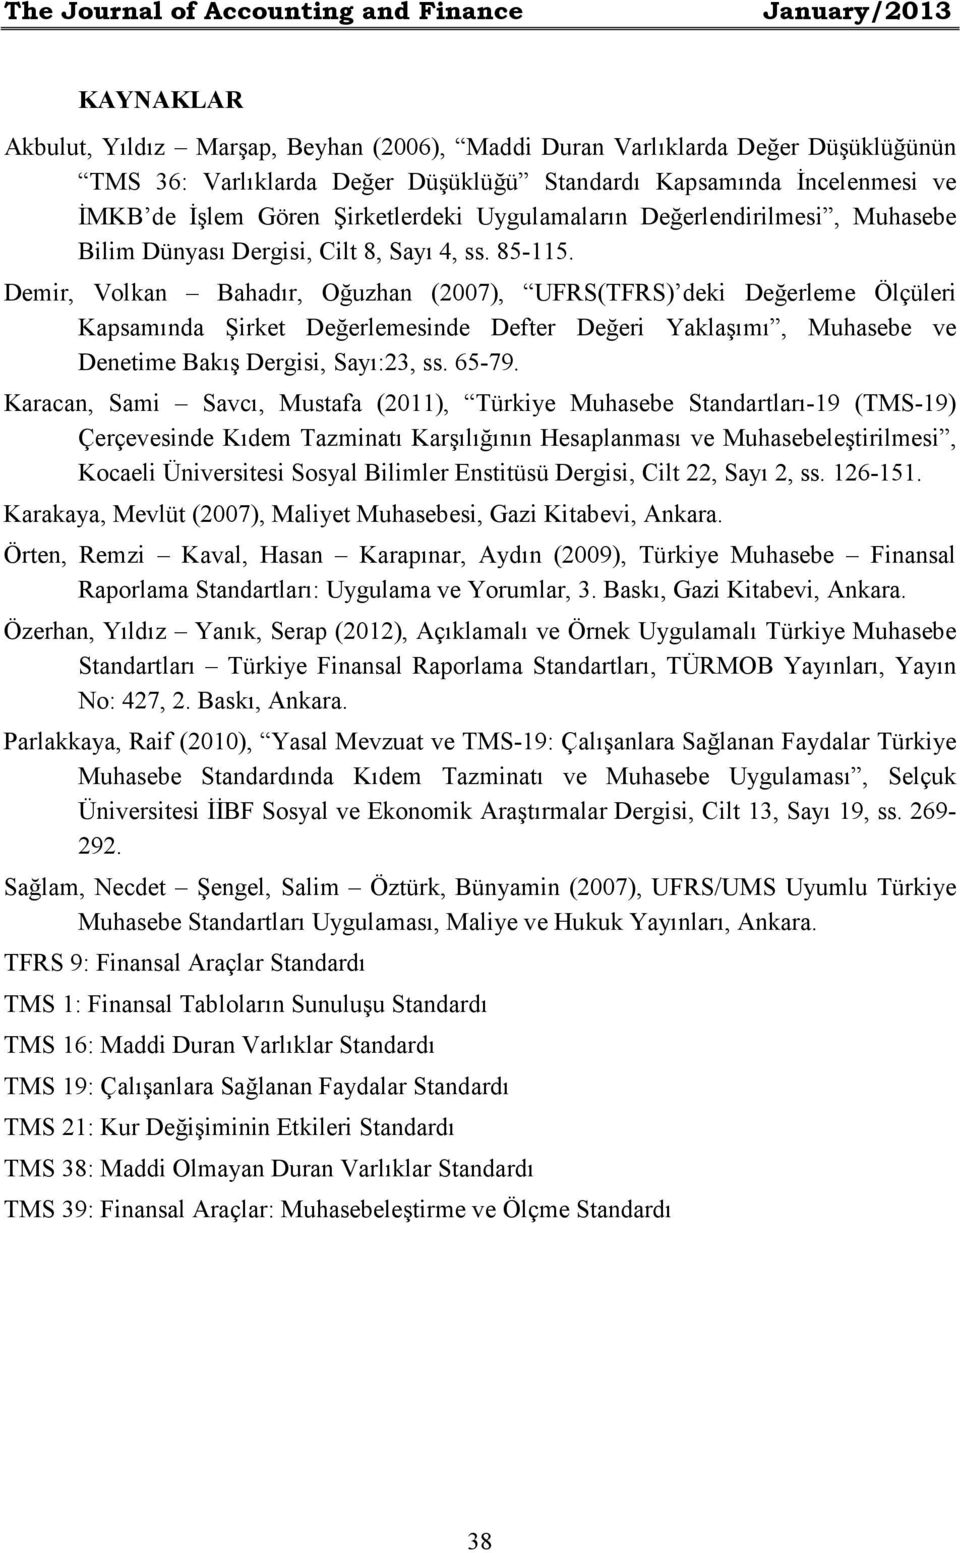 Demir, Volkan Bahadır, Oğuzhan (2007), UFRS(TFRS) deki Değerleme Ölçüleri Kapsamında Şirket Değerlemesinde Defter Değeri Yaklaşımı, Muhasebe ve Denetime Bakış Dergisi, Sayı:23, ss. 65-79.